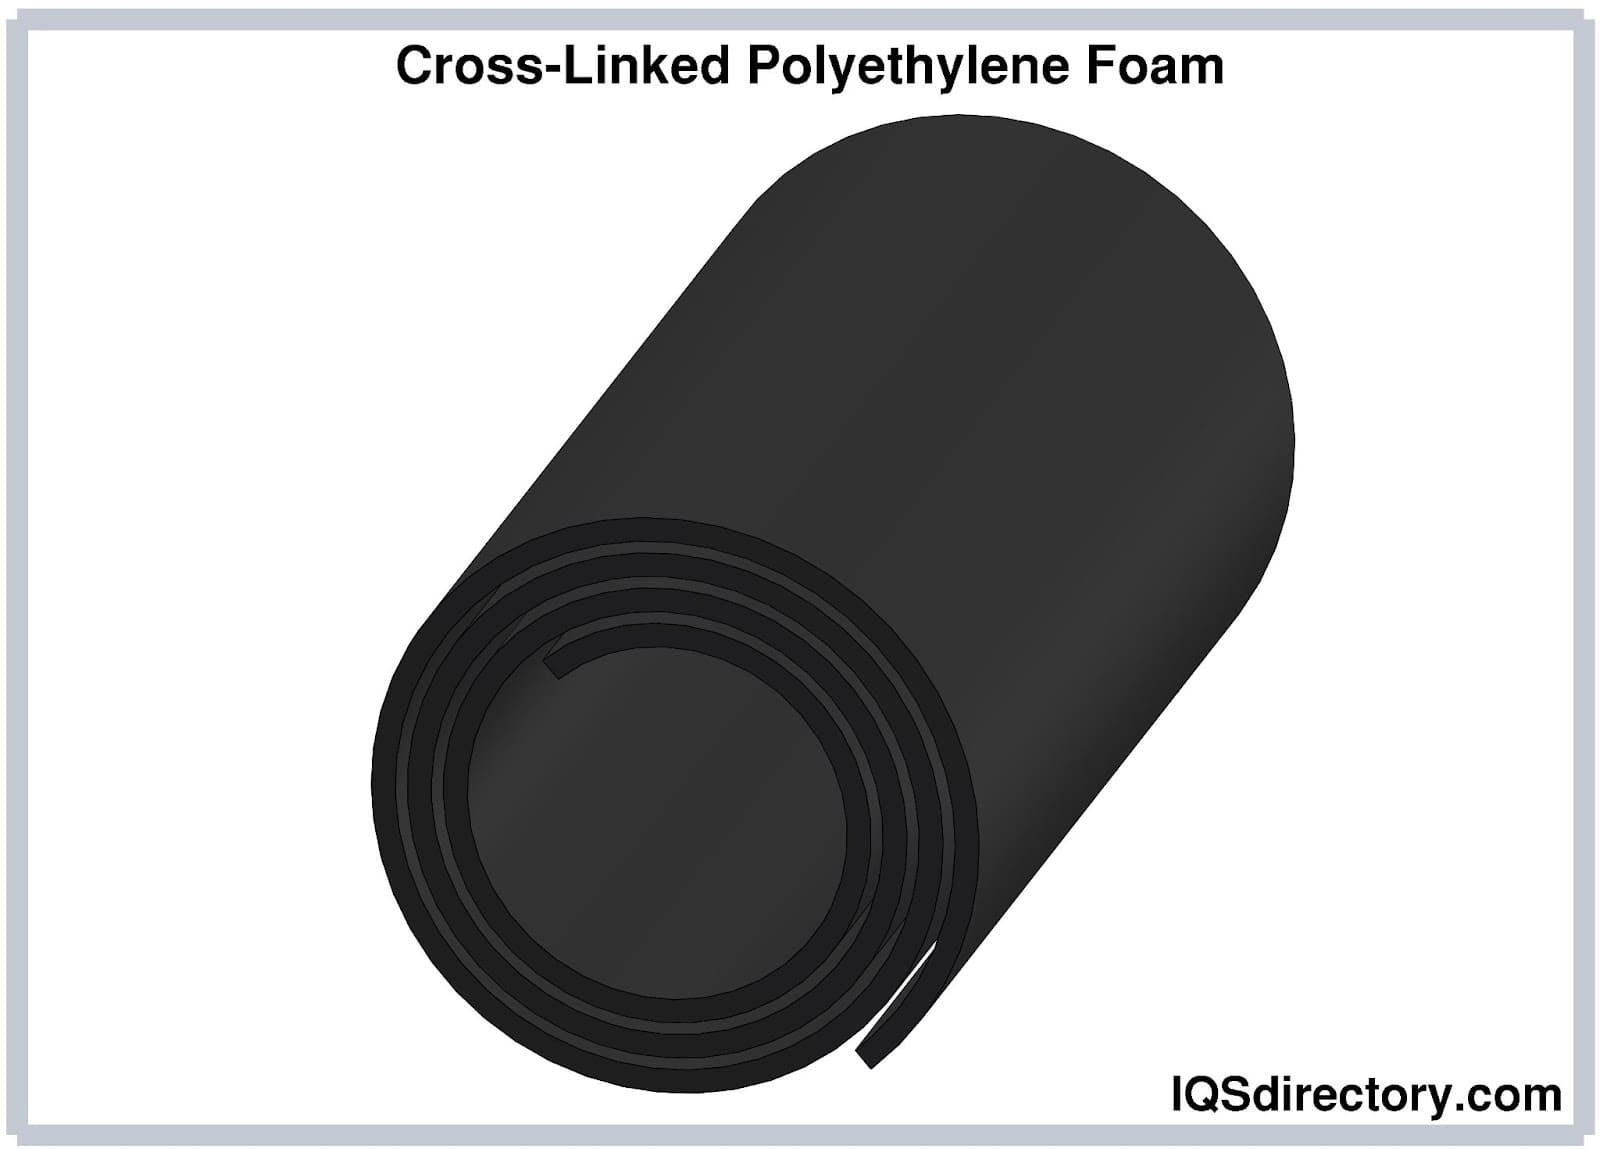 Cross-Linked Polyethylene Foam